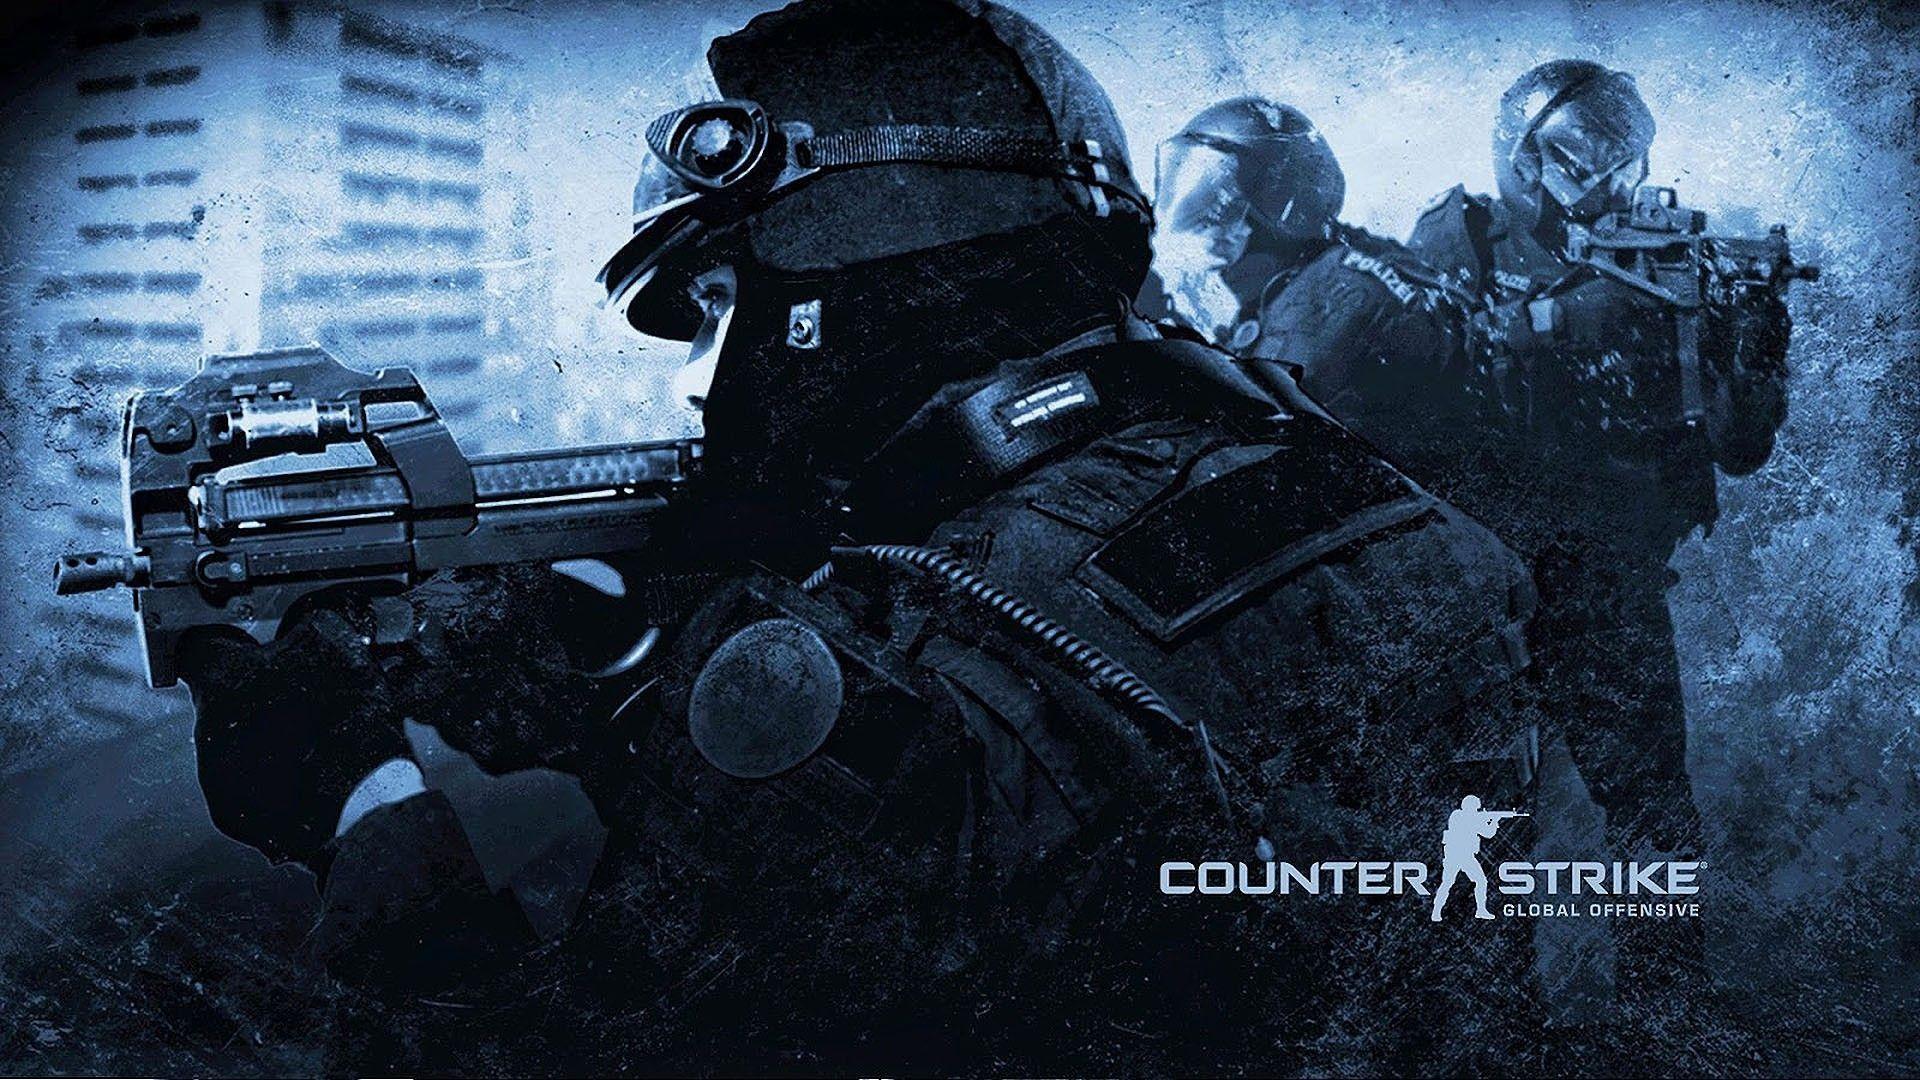 Counter-Strike 1.6 Wallpaper 4k Pc